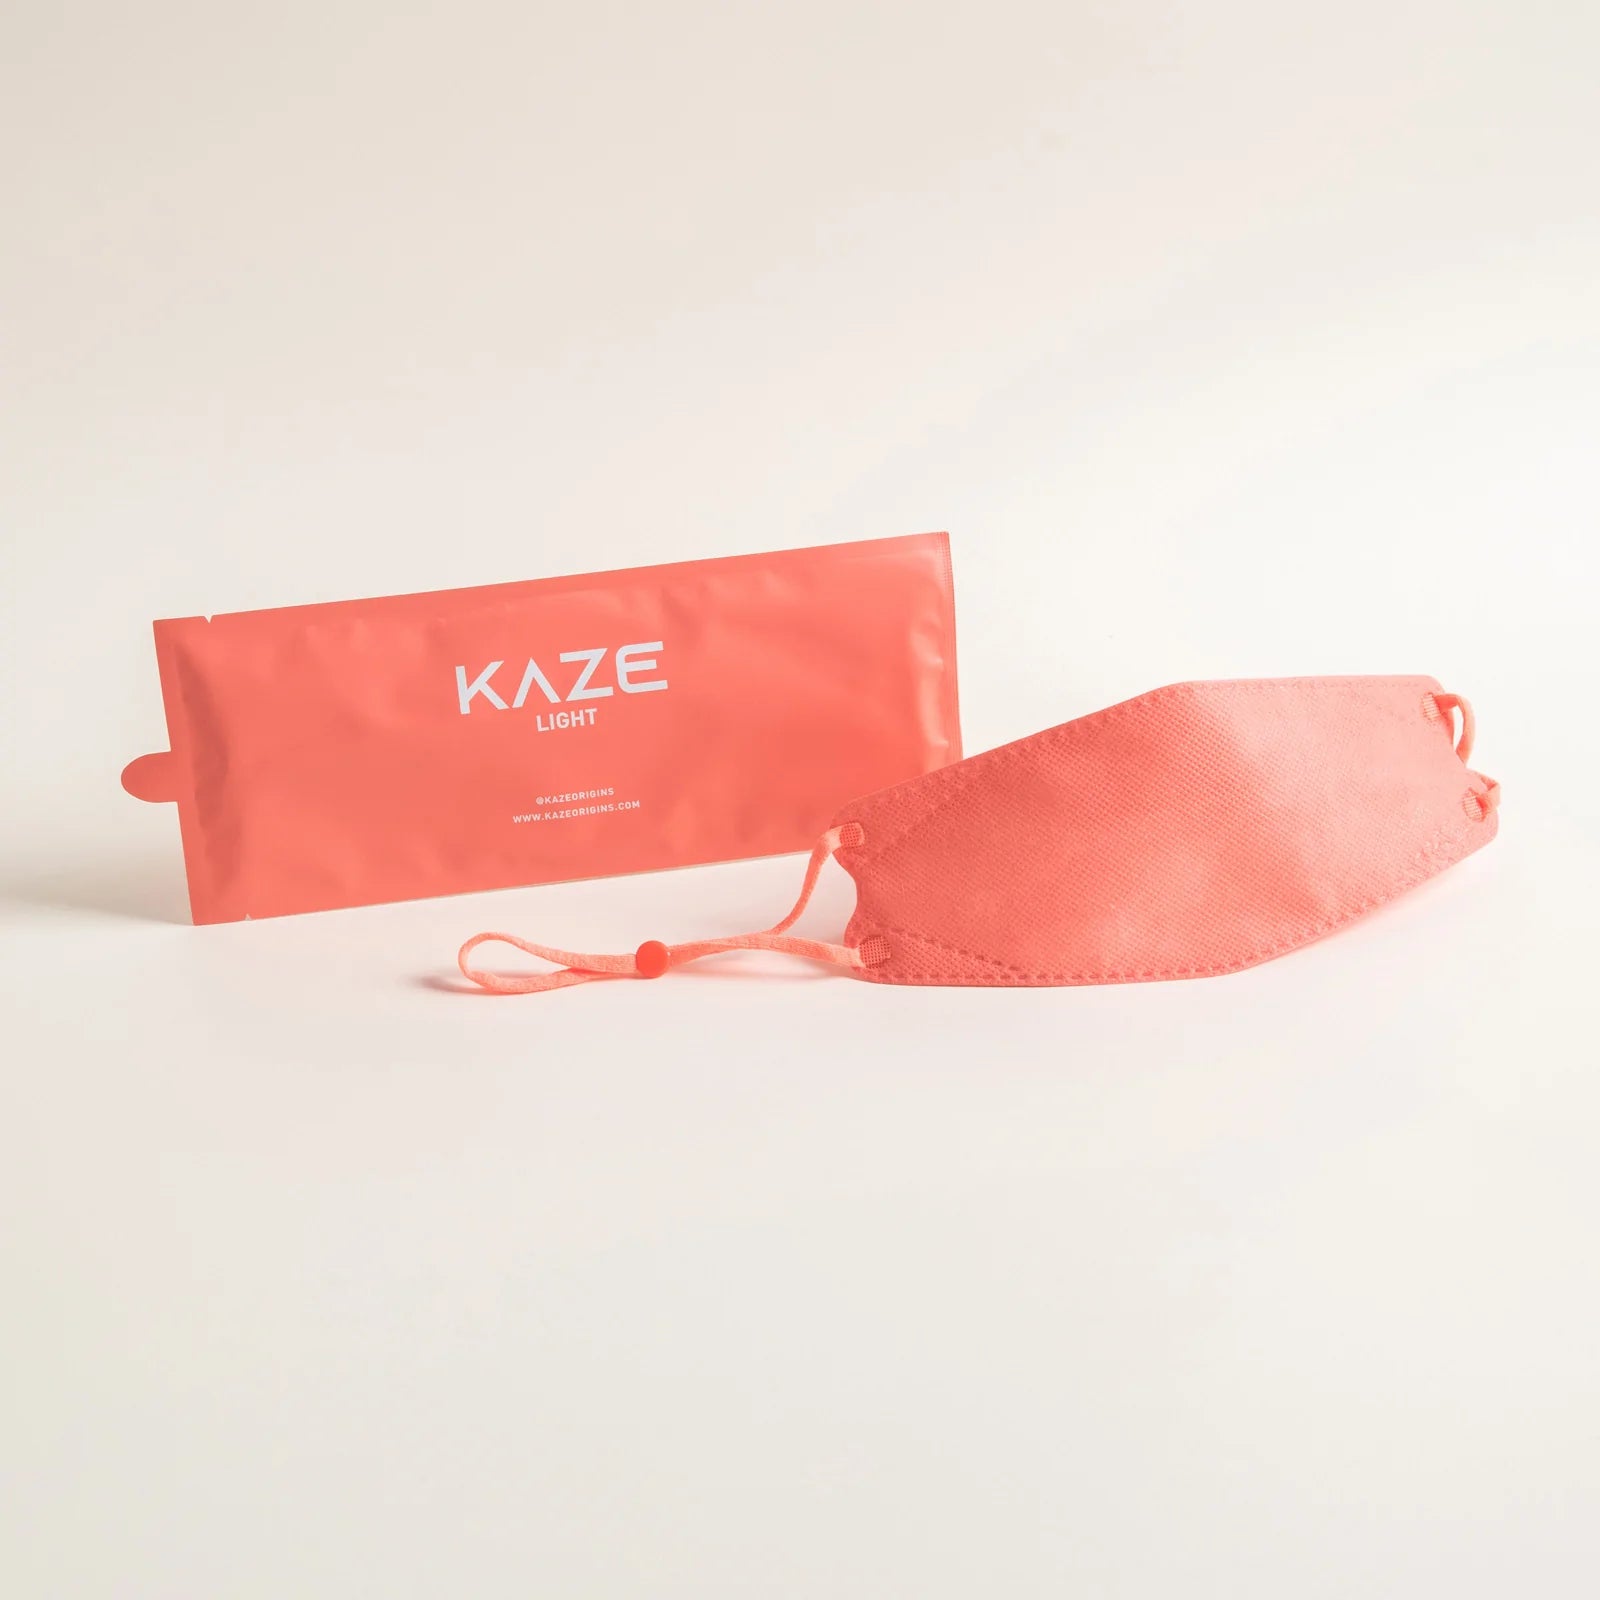 KAZE Masks- Light Aesthetic Series